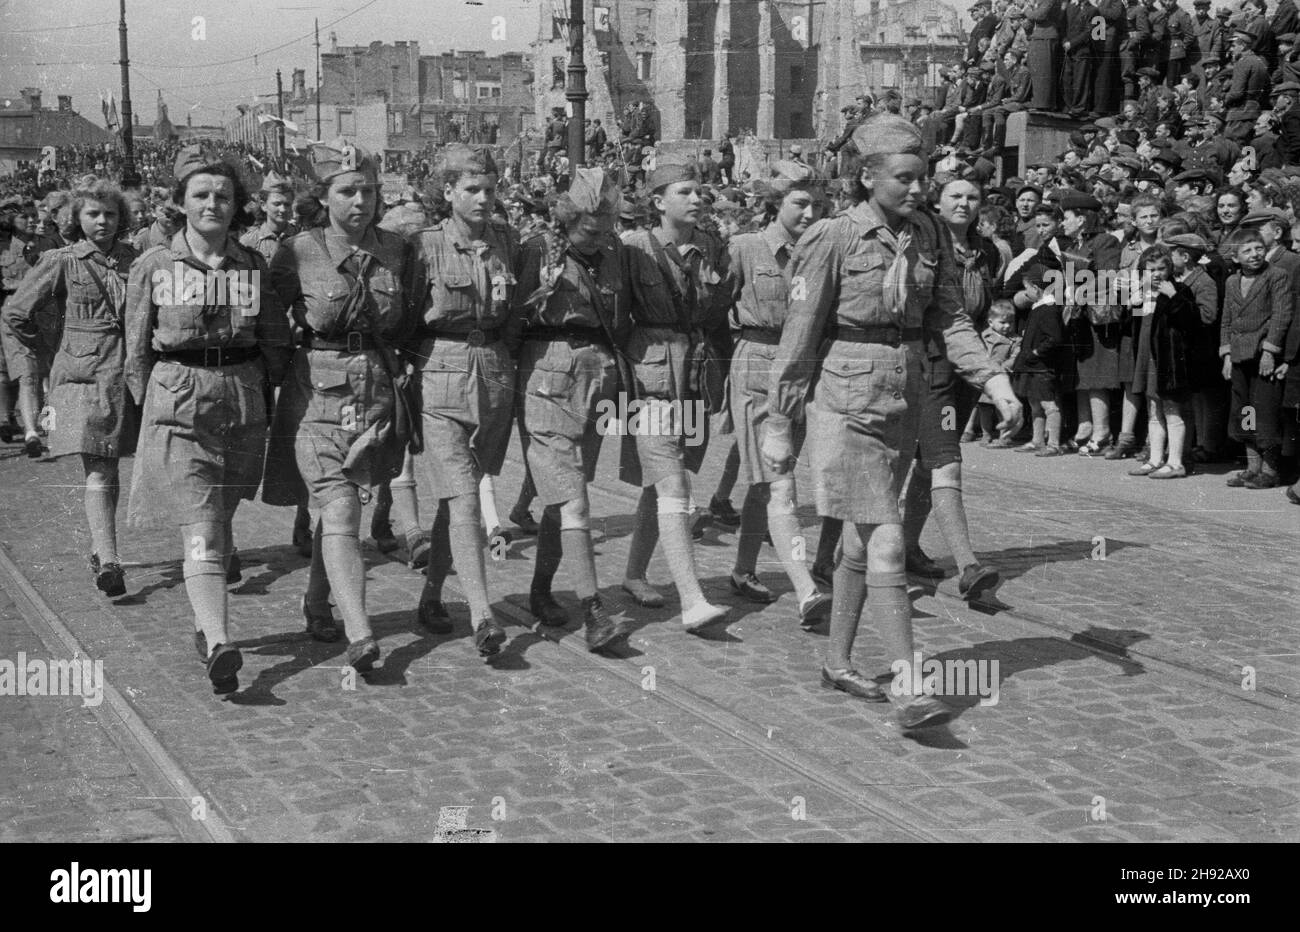 Warszawa, 1947-05-01. Pochód pierwszomajowy na ulicy Nowy Œwiat. Nz. kolumna harcerek. bb/mgs  PAP      Warsaw, May 1, 1947. May Day March via Nowy Swiat Street (Warsaw downtown). Pictured: girl-scouts   bb/mgs  PAP Stock Photo